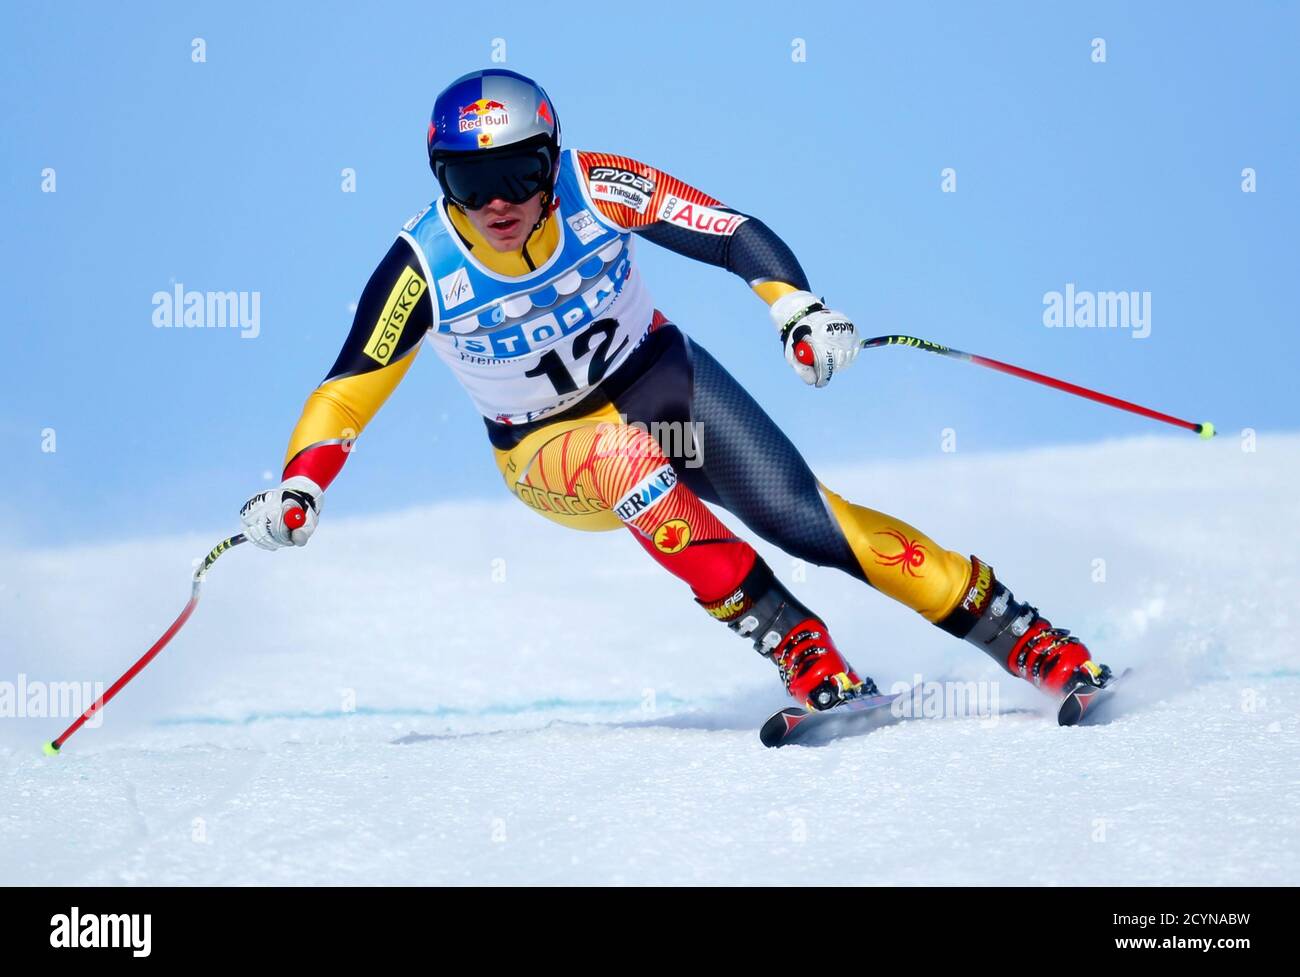 Erik Guay aus Kanada kehrt beim alpinen Skisport-Training für die Männer-WM-Abfahrt in Lake Louise, Alberta, am 21. November 2012, um. REUTERS/Mike Blake (KANADA - Tags: SKIFAHREN) Stockfoto